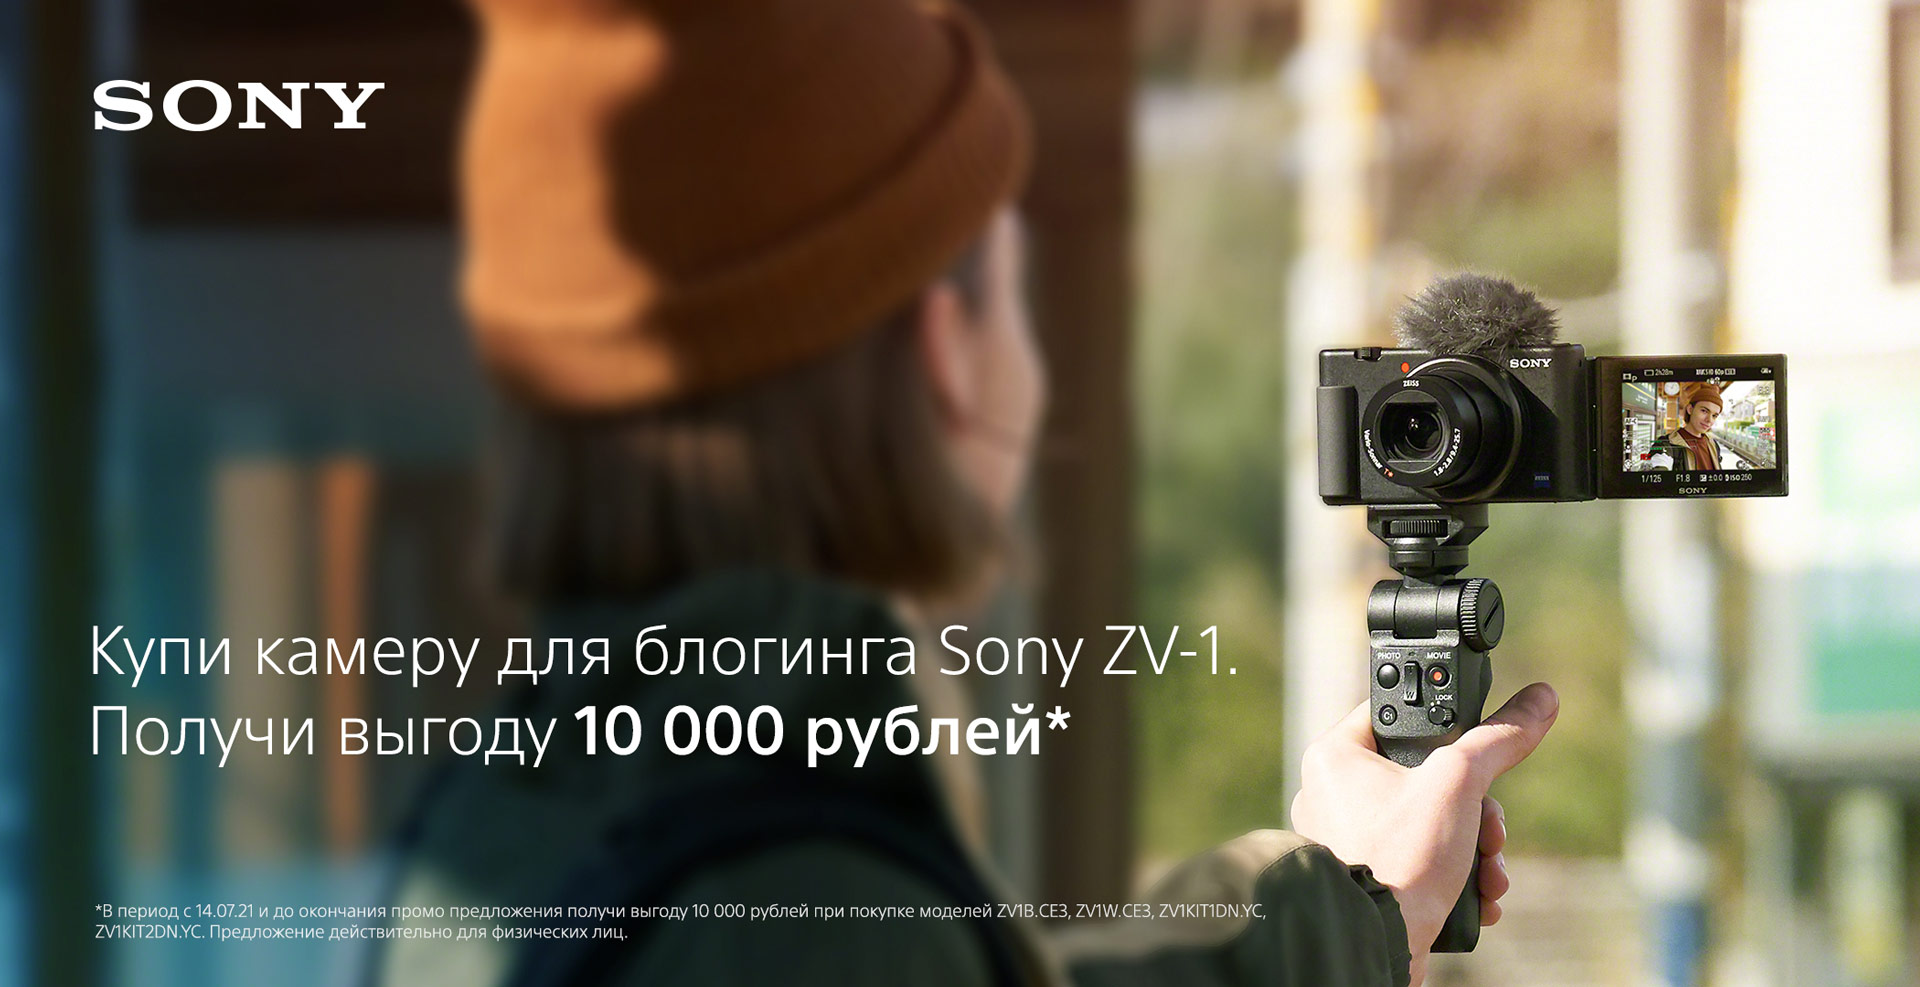 Выгода 10000 рублей на покупку камеры для блогинга